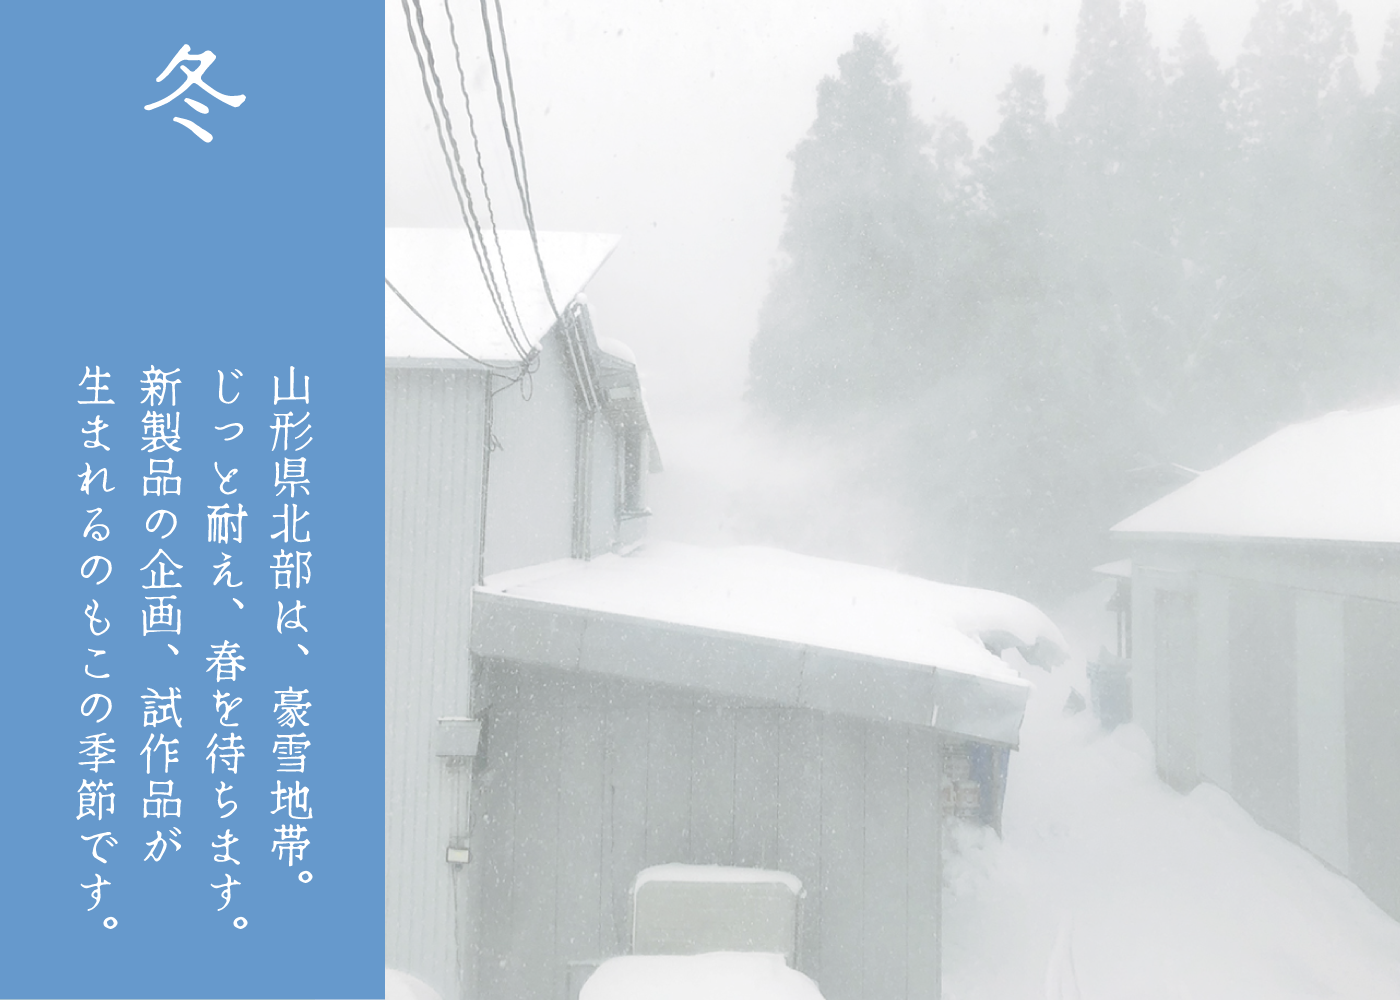 山形県は豪雪地帯です